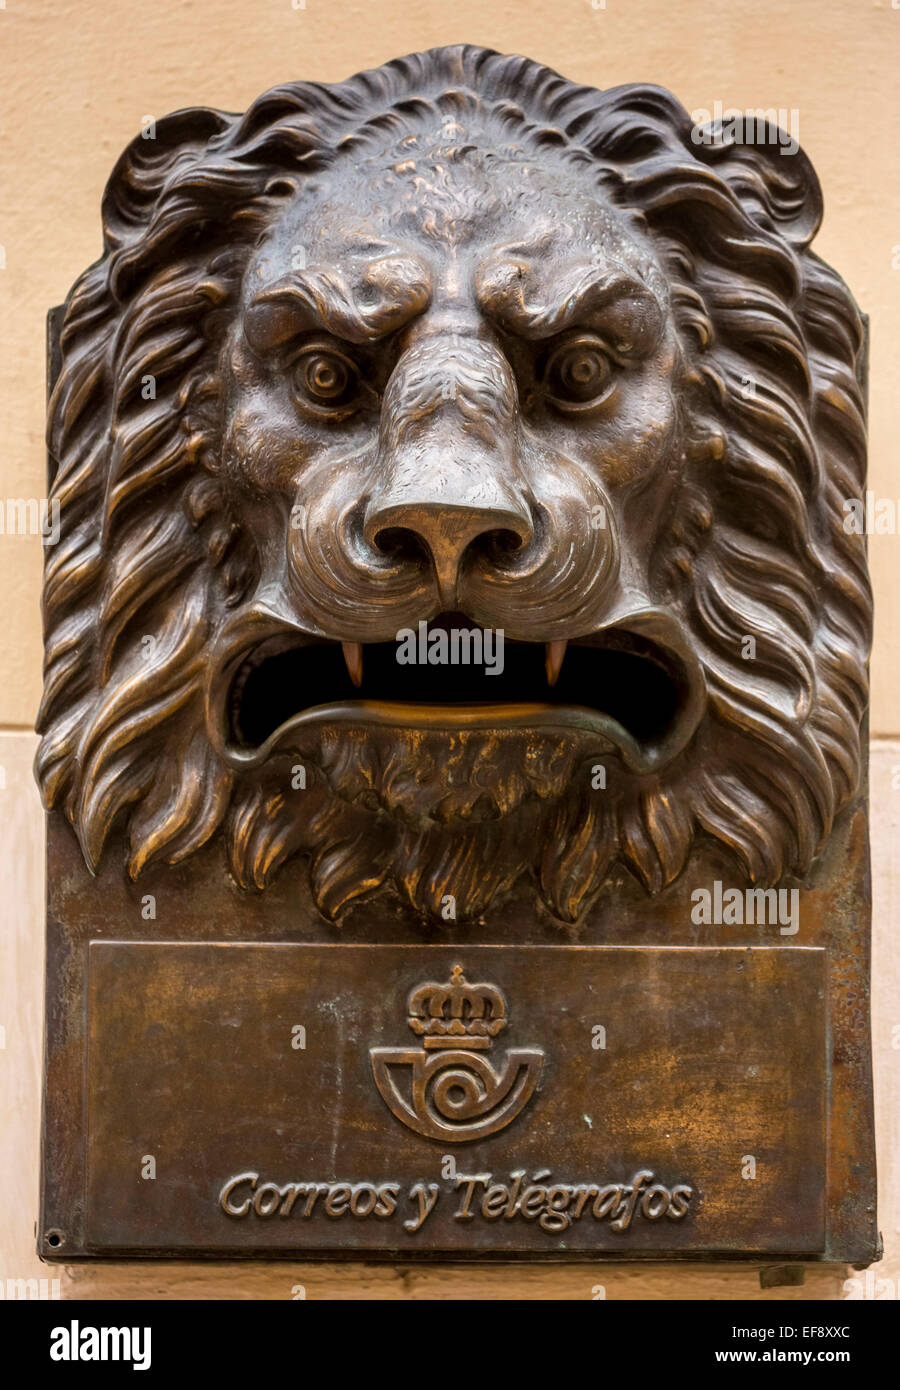 Boîte aux lettres en bronze en forme d'une tête de lion, Correos y Telegraficos, La Havane, Cuba Banque D'Images